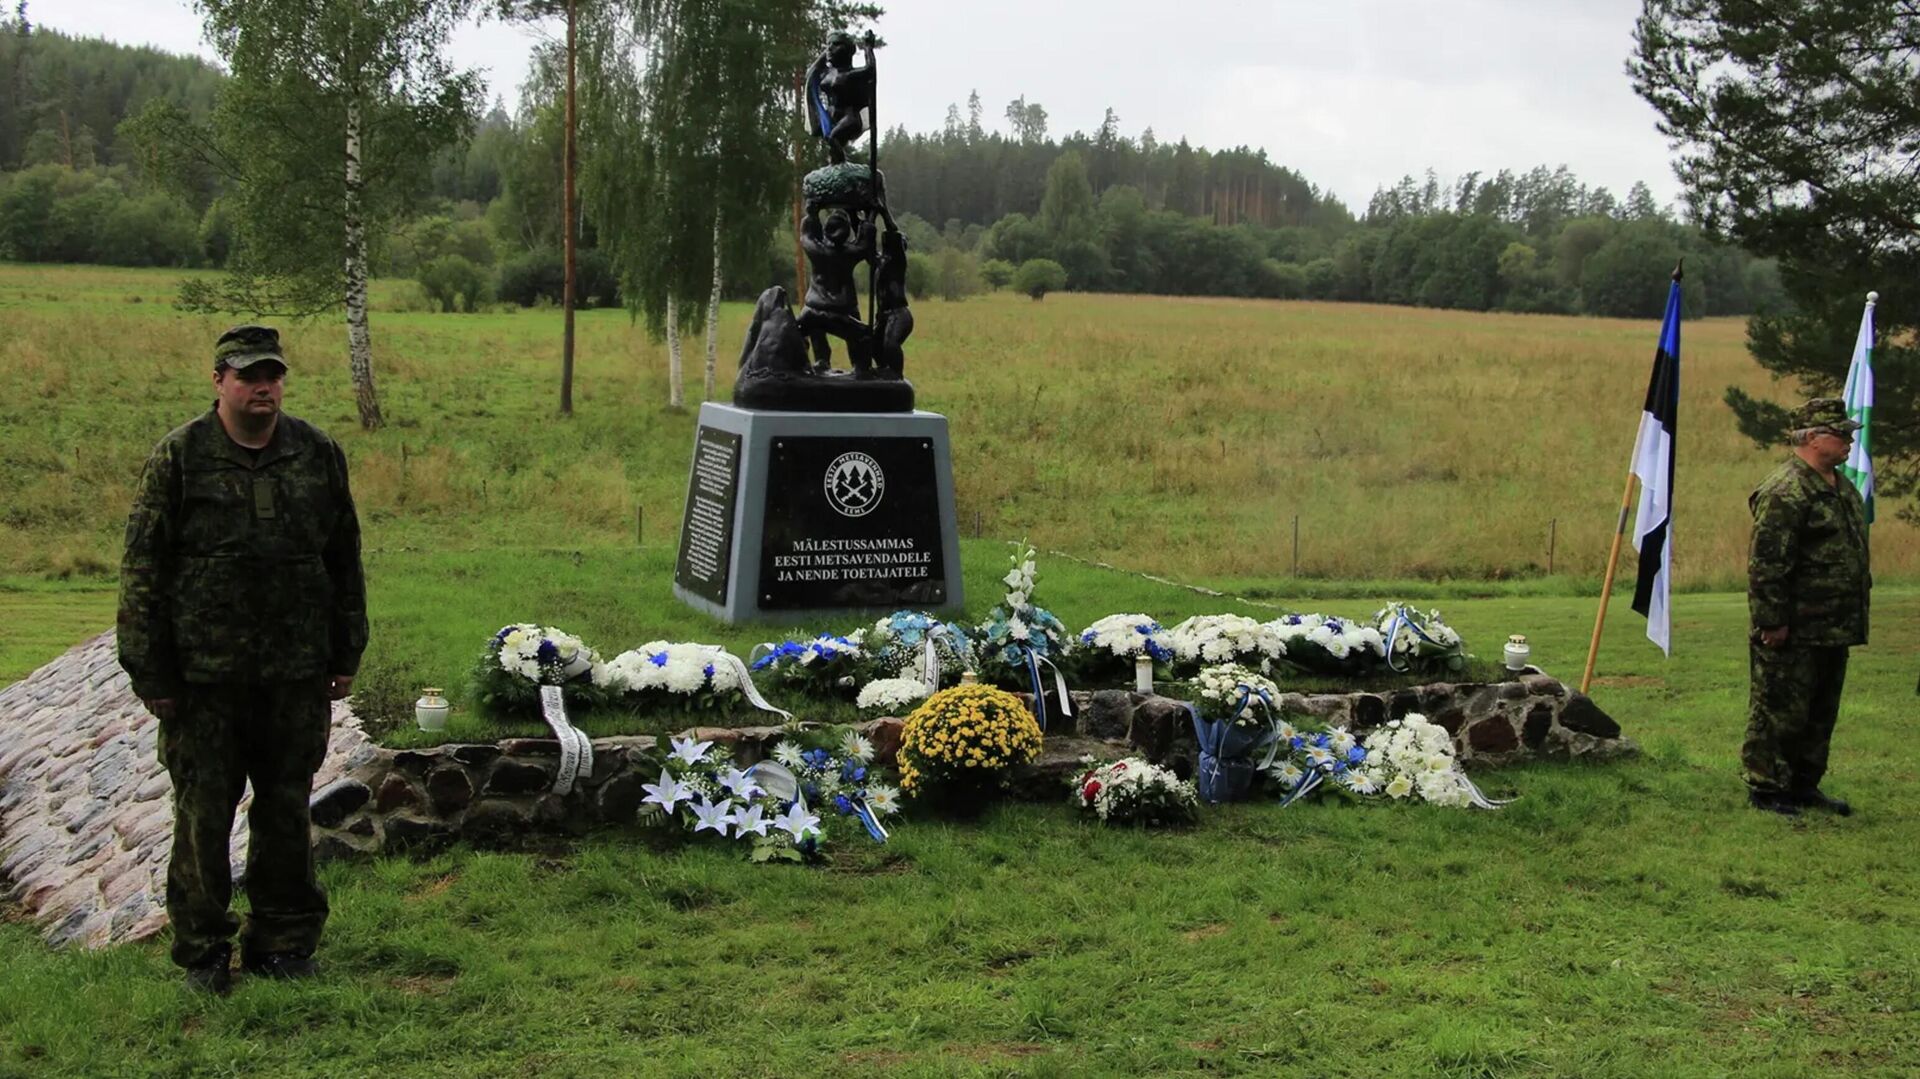 Открытие памятника членам вооруженных националистических формирований, известным под общим названием лесные братья, в Эстонии - РИА Новости, 1920, 23.08.2021